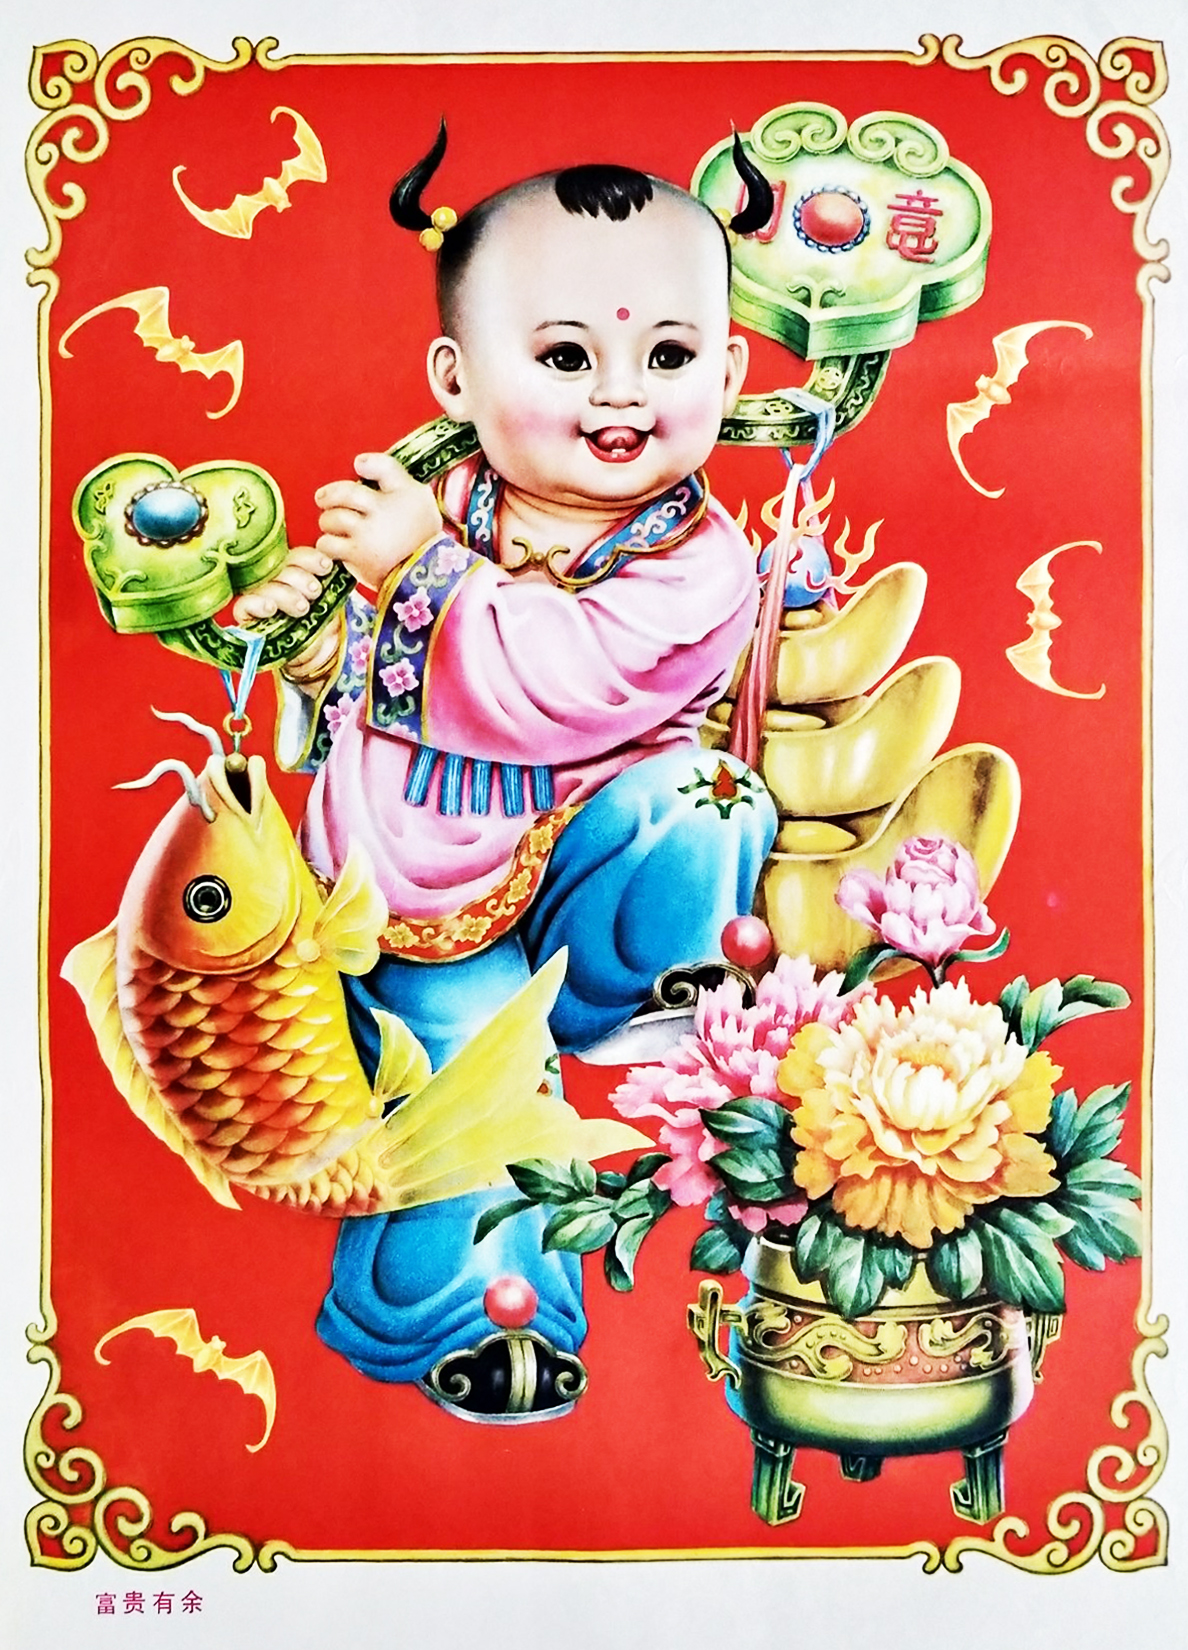 高清年画胖娃娃,红鲤鱼,丰收乐,吉庆有余,一帆风顺,鱼肥荷香